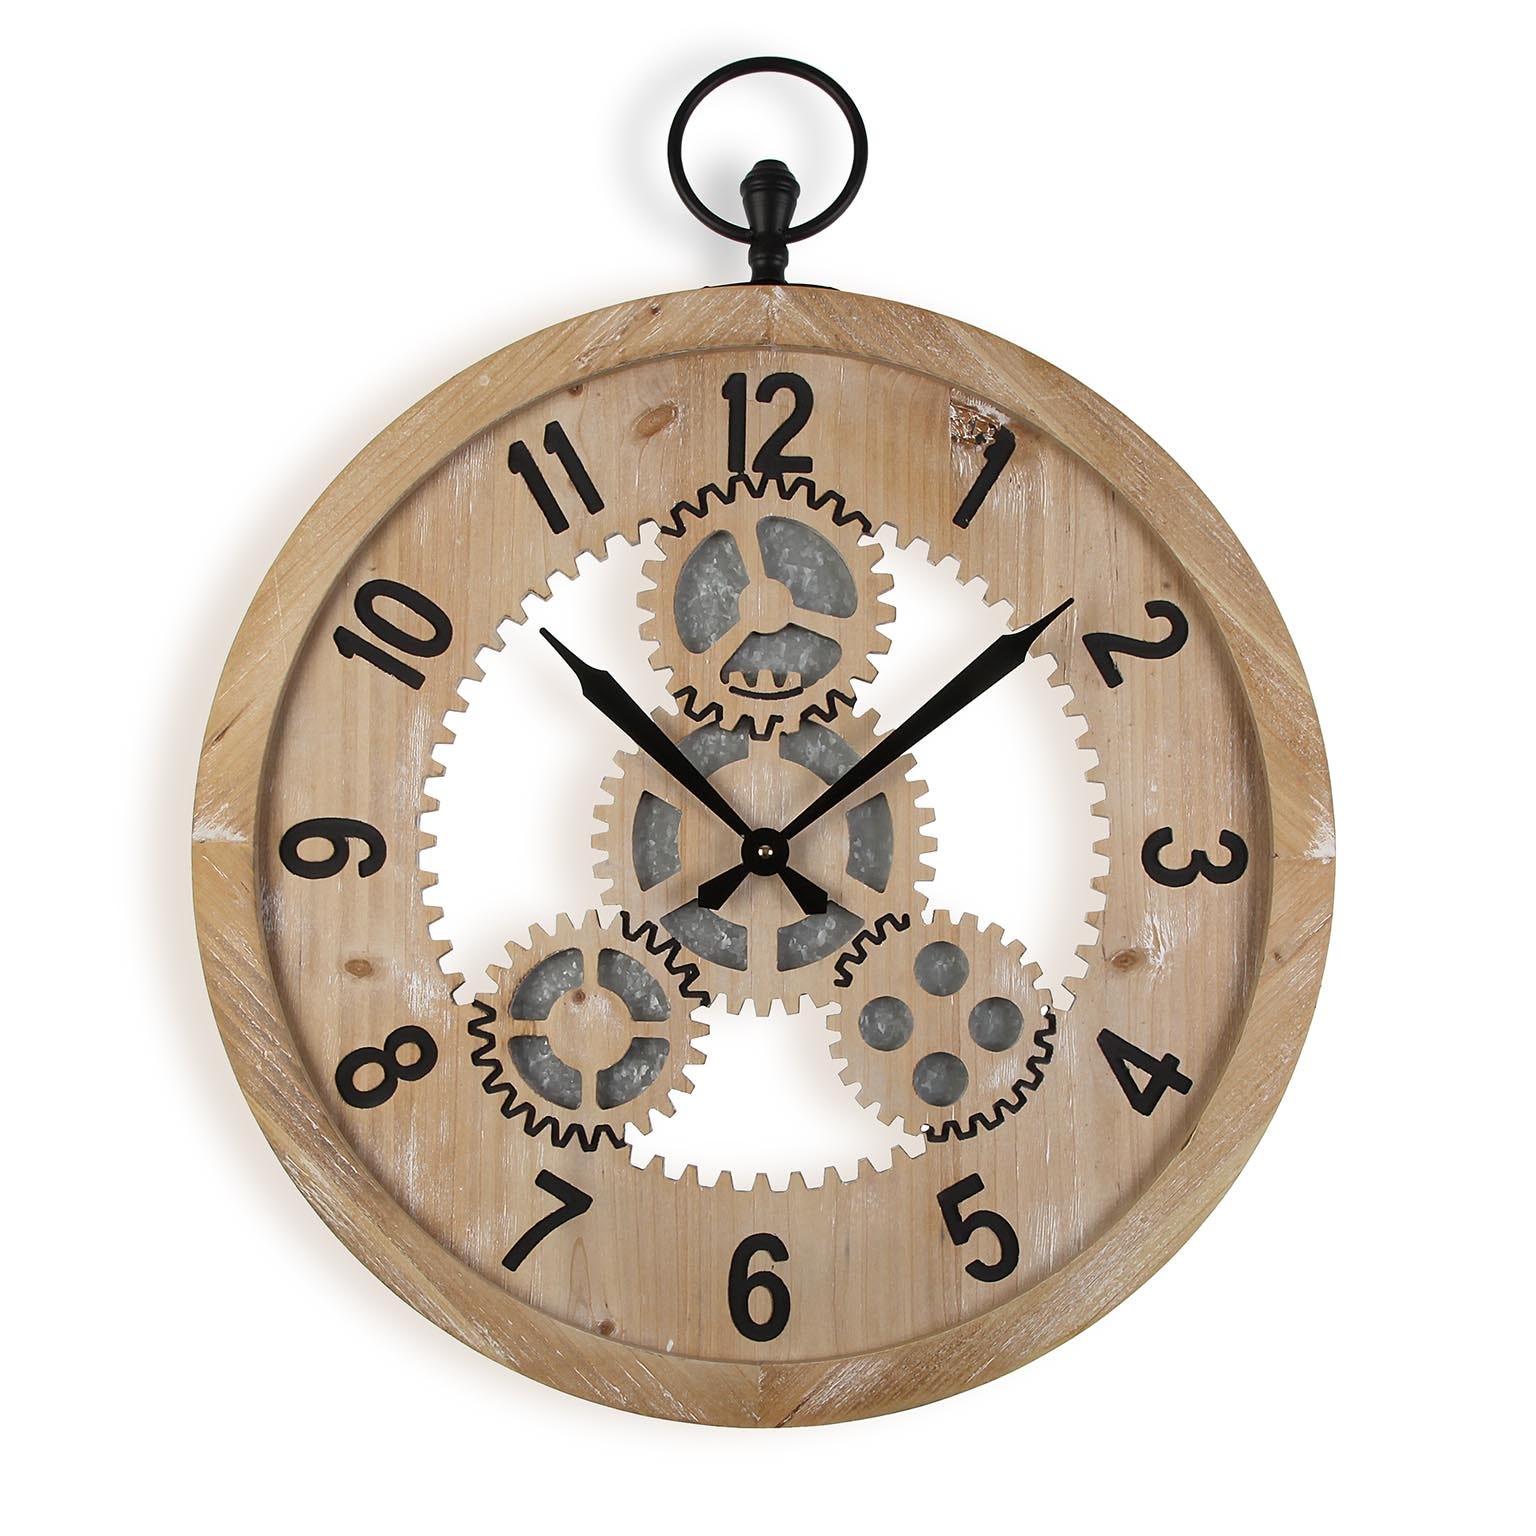 Versa Macquarie Reloj de Pared Decorativo para la Cocina, el Salón